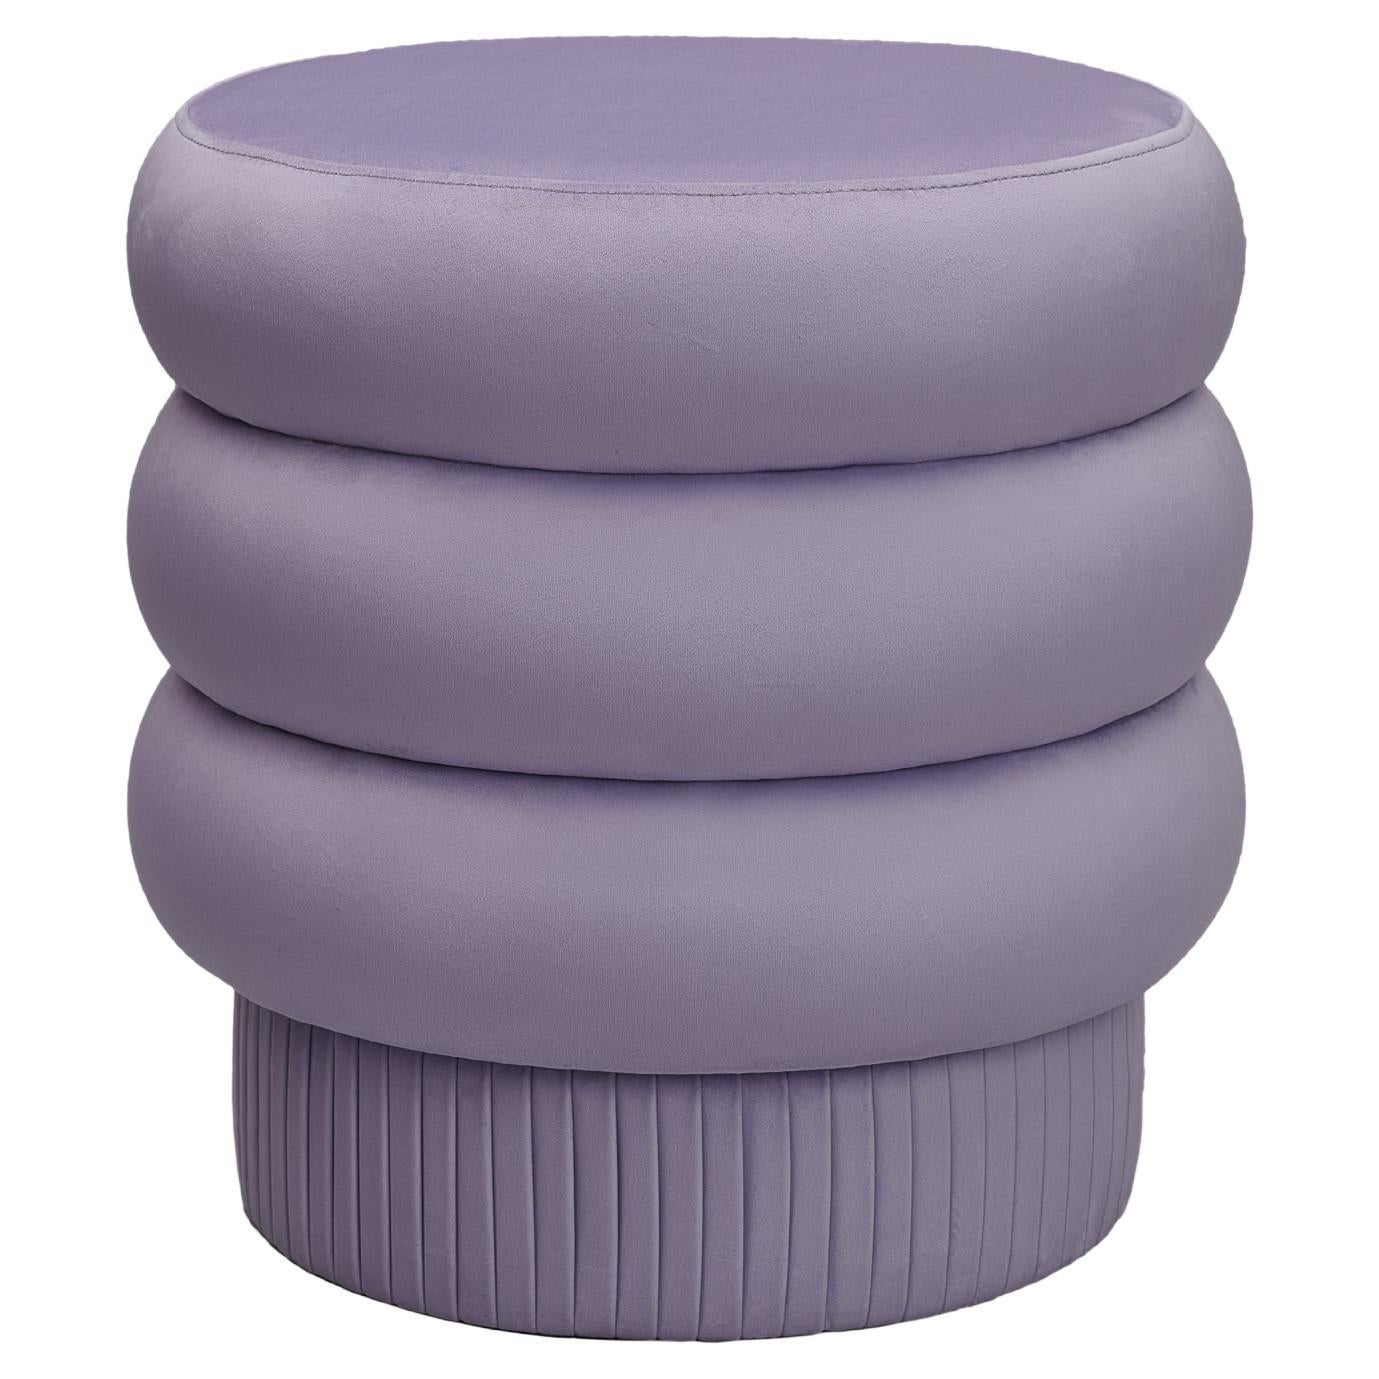 Pompa Pouf by Houtique, Purple